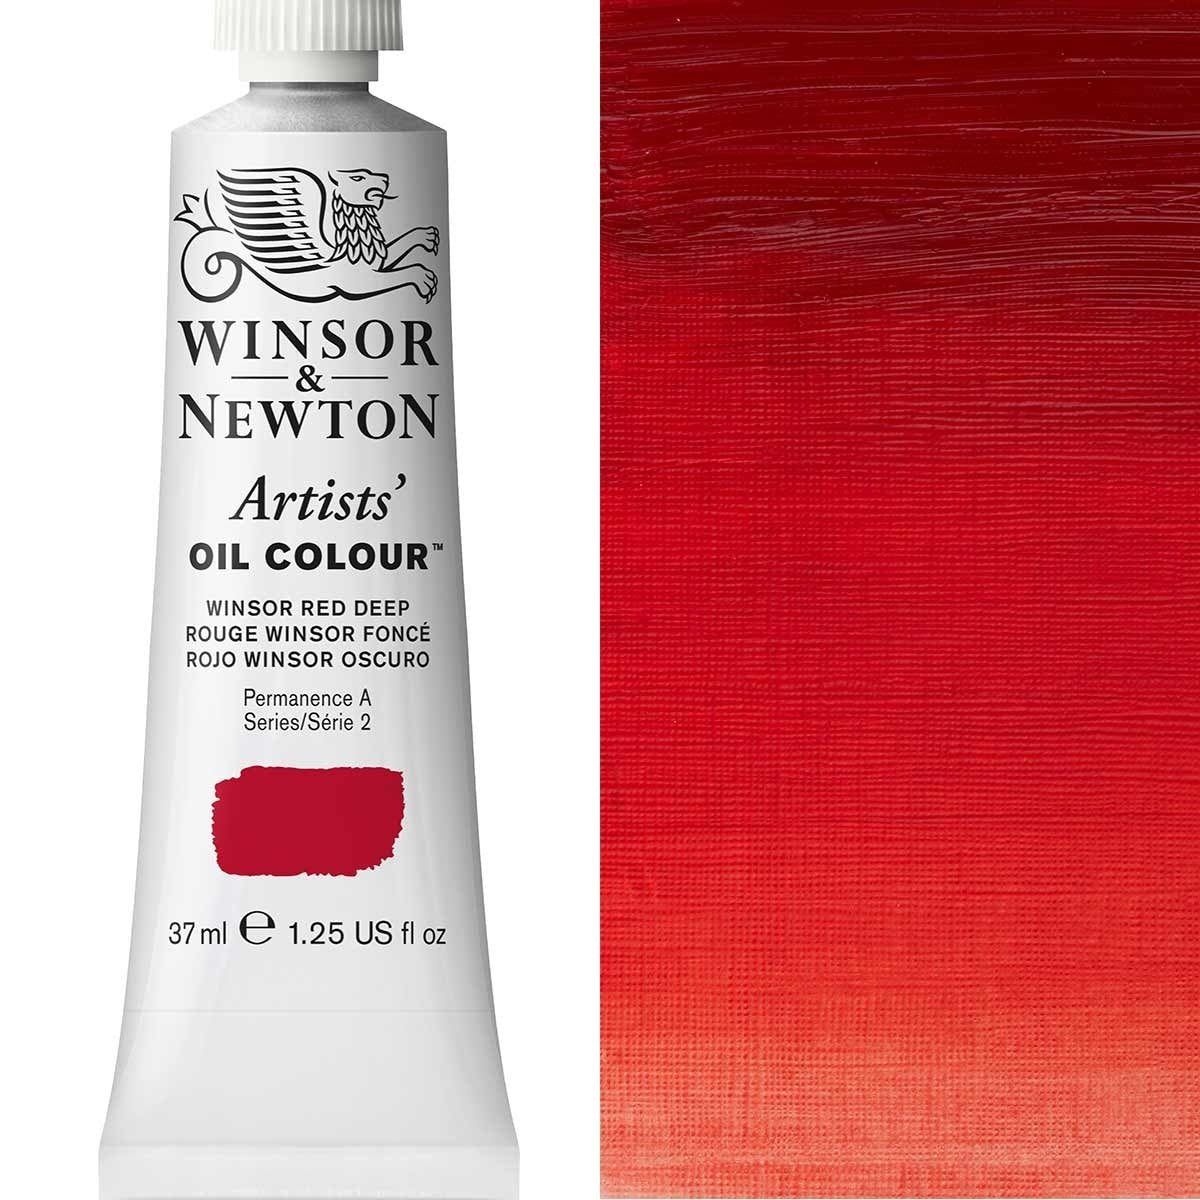 Winsor et Newton - Couleur d'huile des artistes - 37 ml - Winsor Red Deep